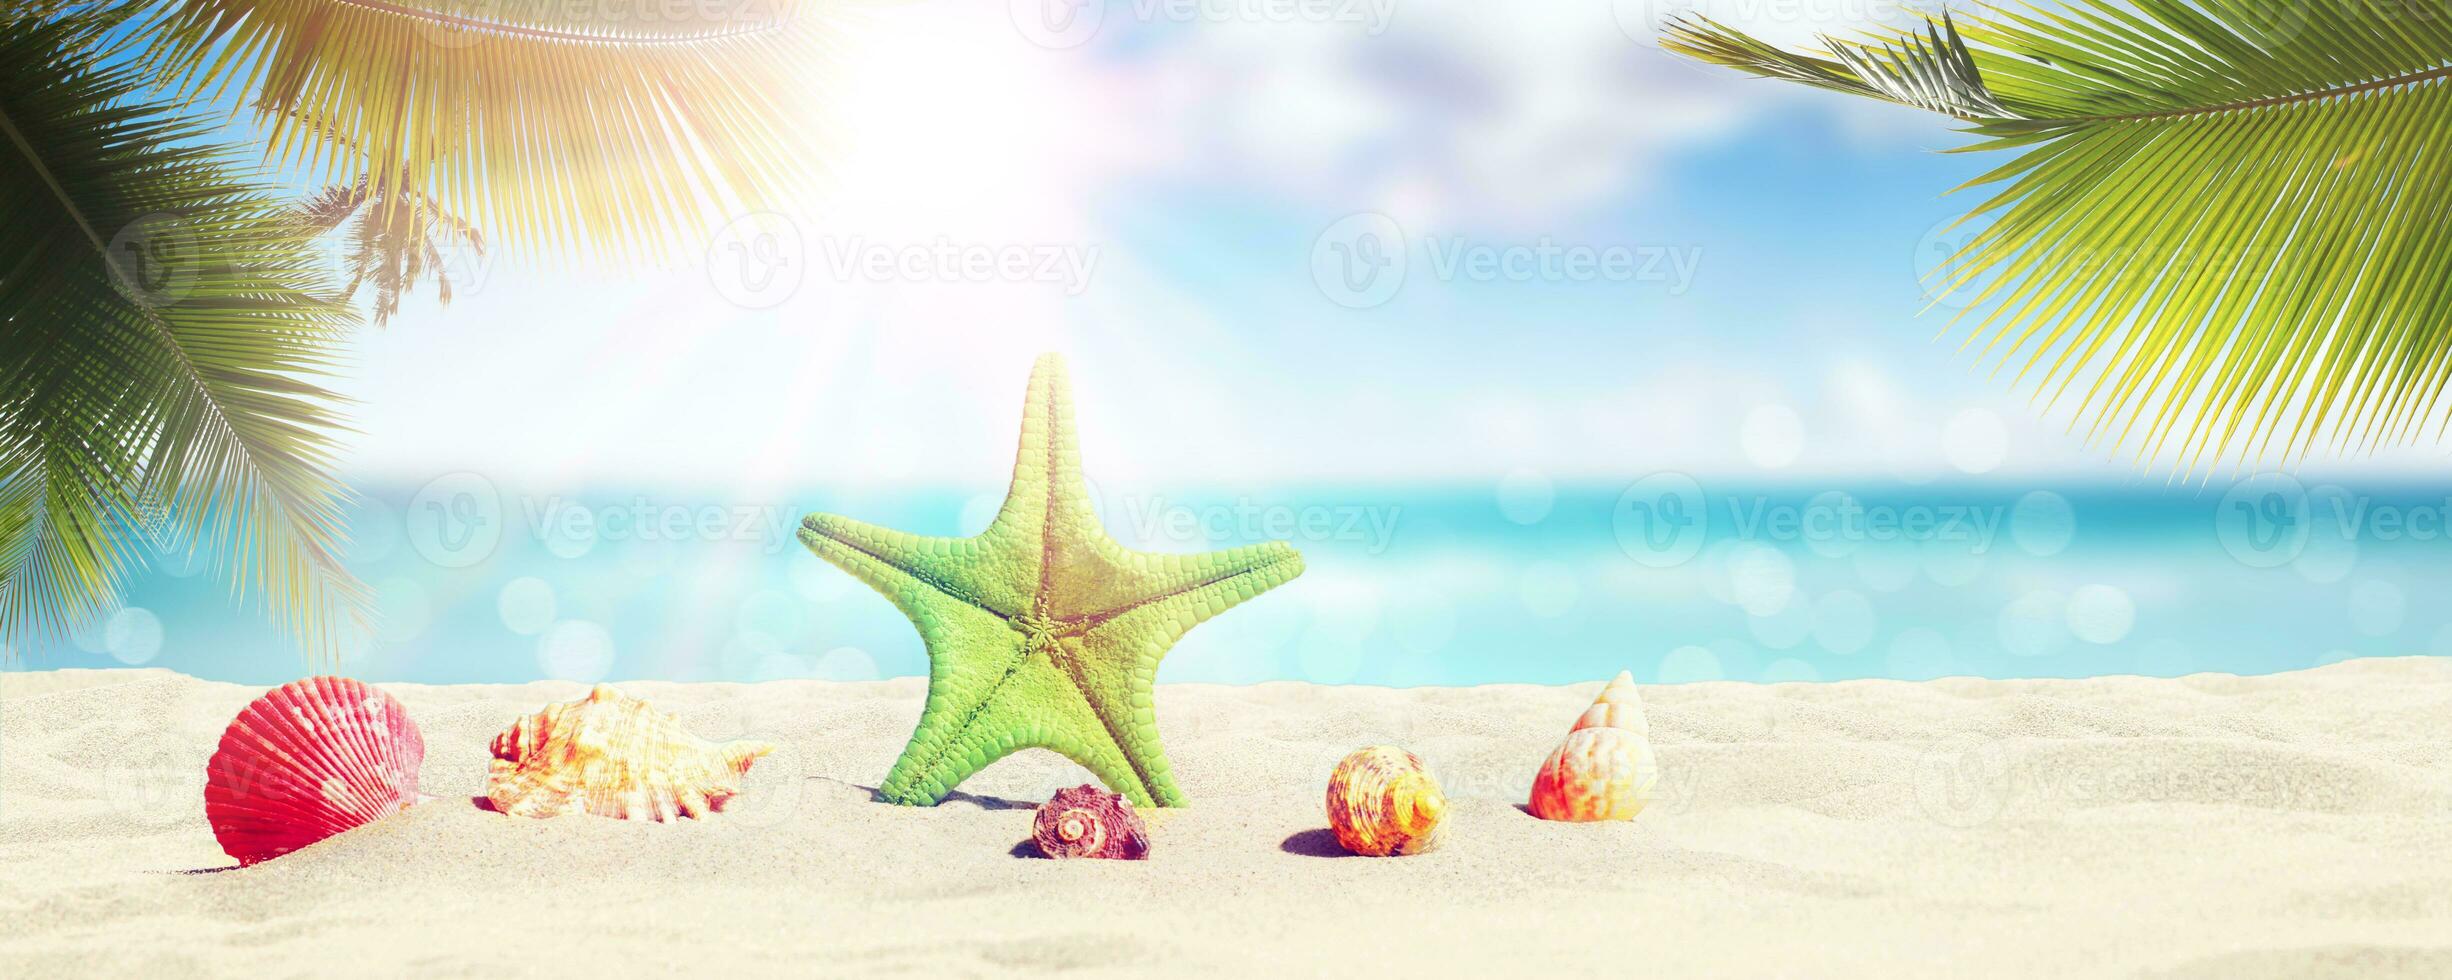 stelle marine e conchiglie sulla spiaggia soleggiata. sfondo di vacanze estive foto